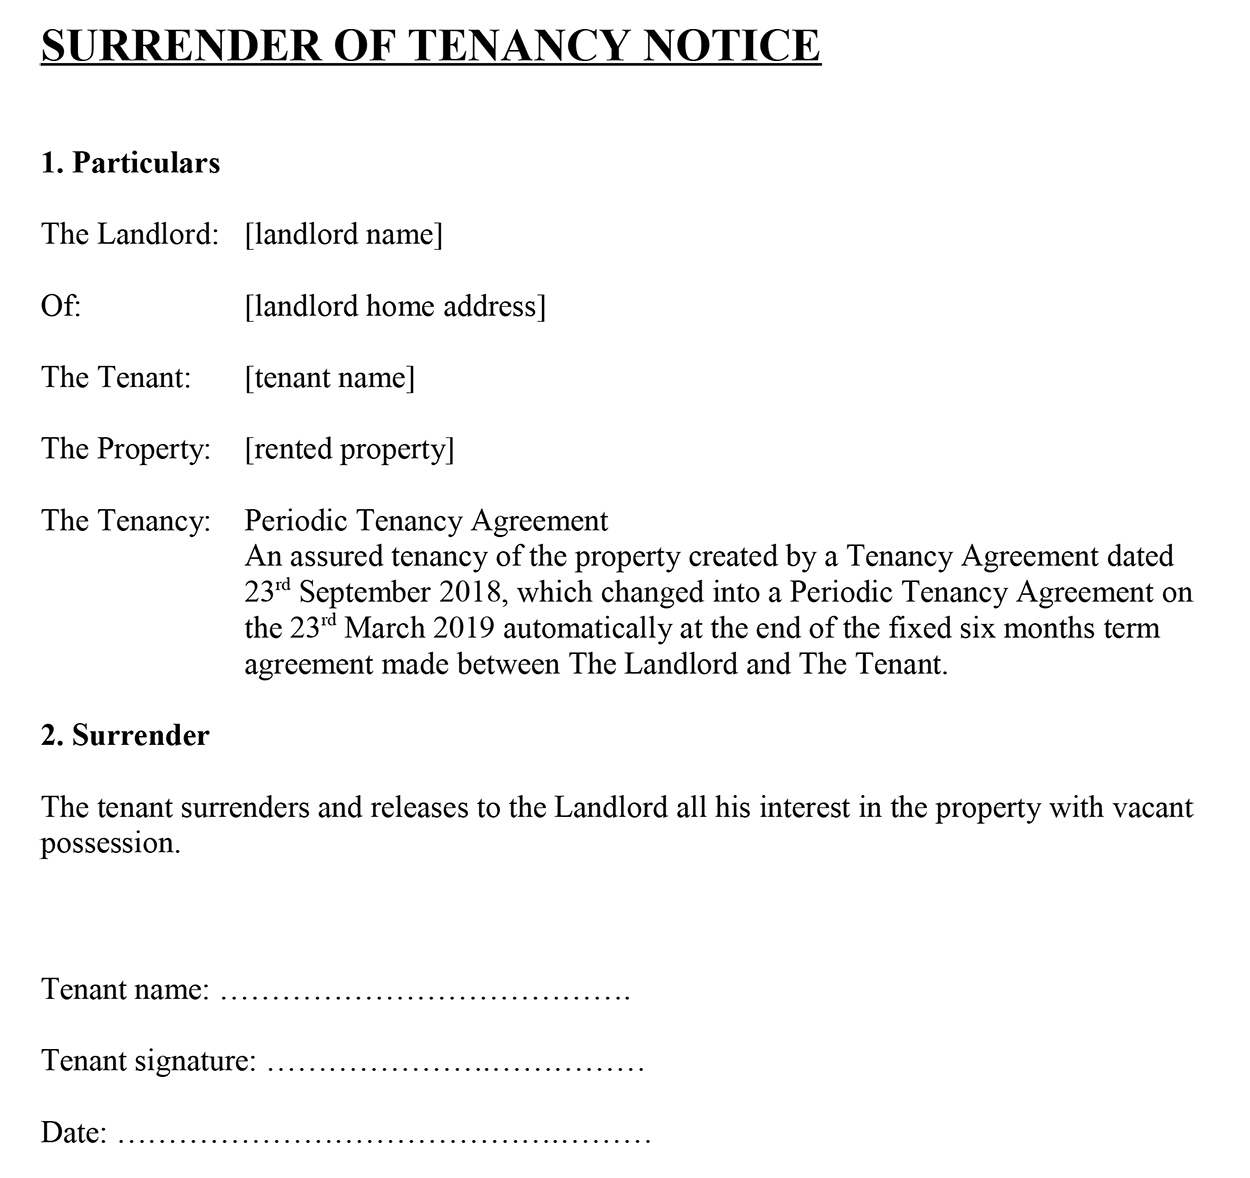 Surrender of tenancy notice template